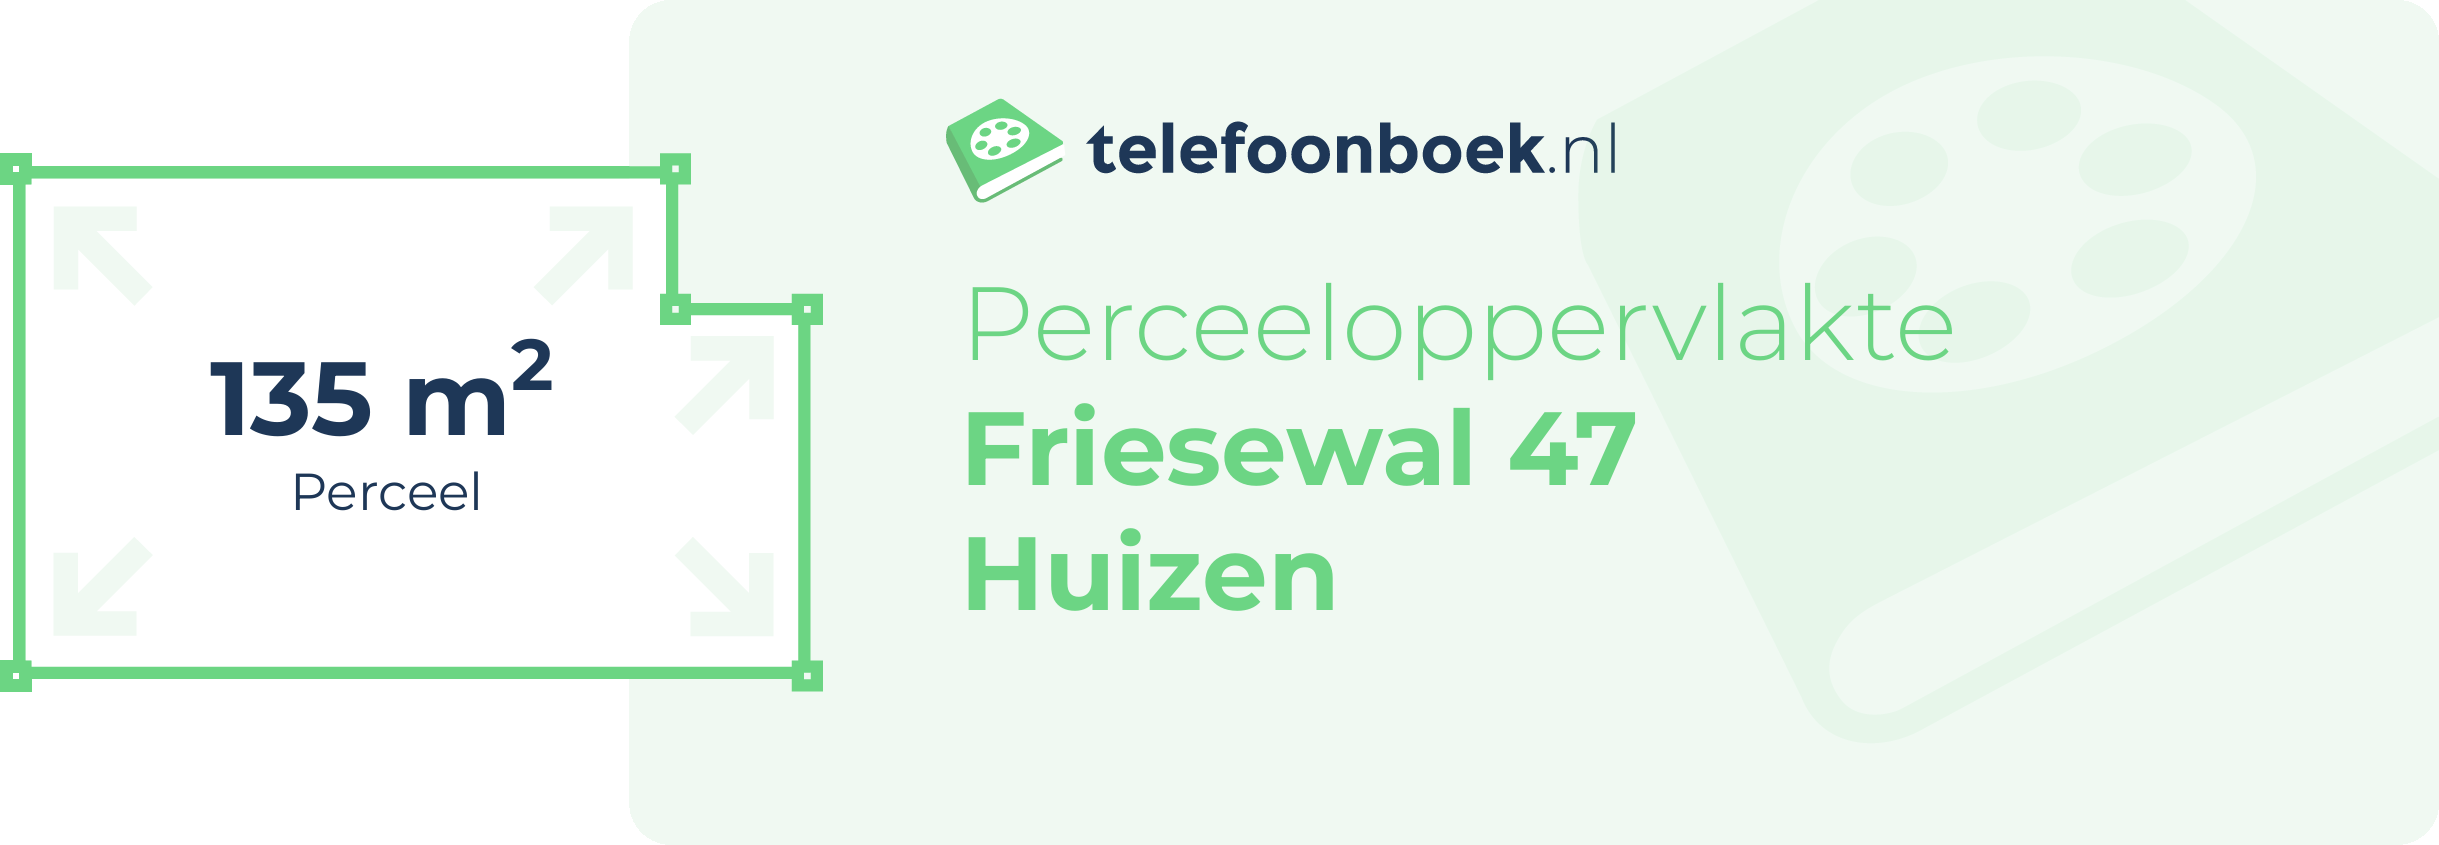 Perceeloppervlakte Friesewal 47 Huizen